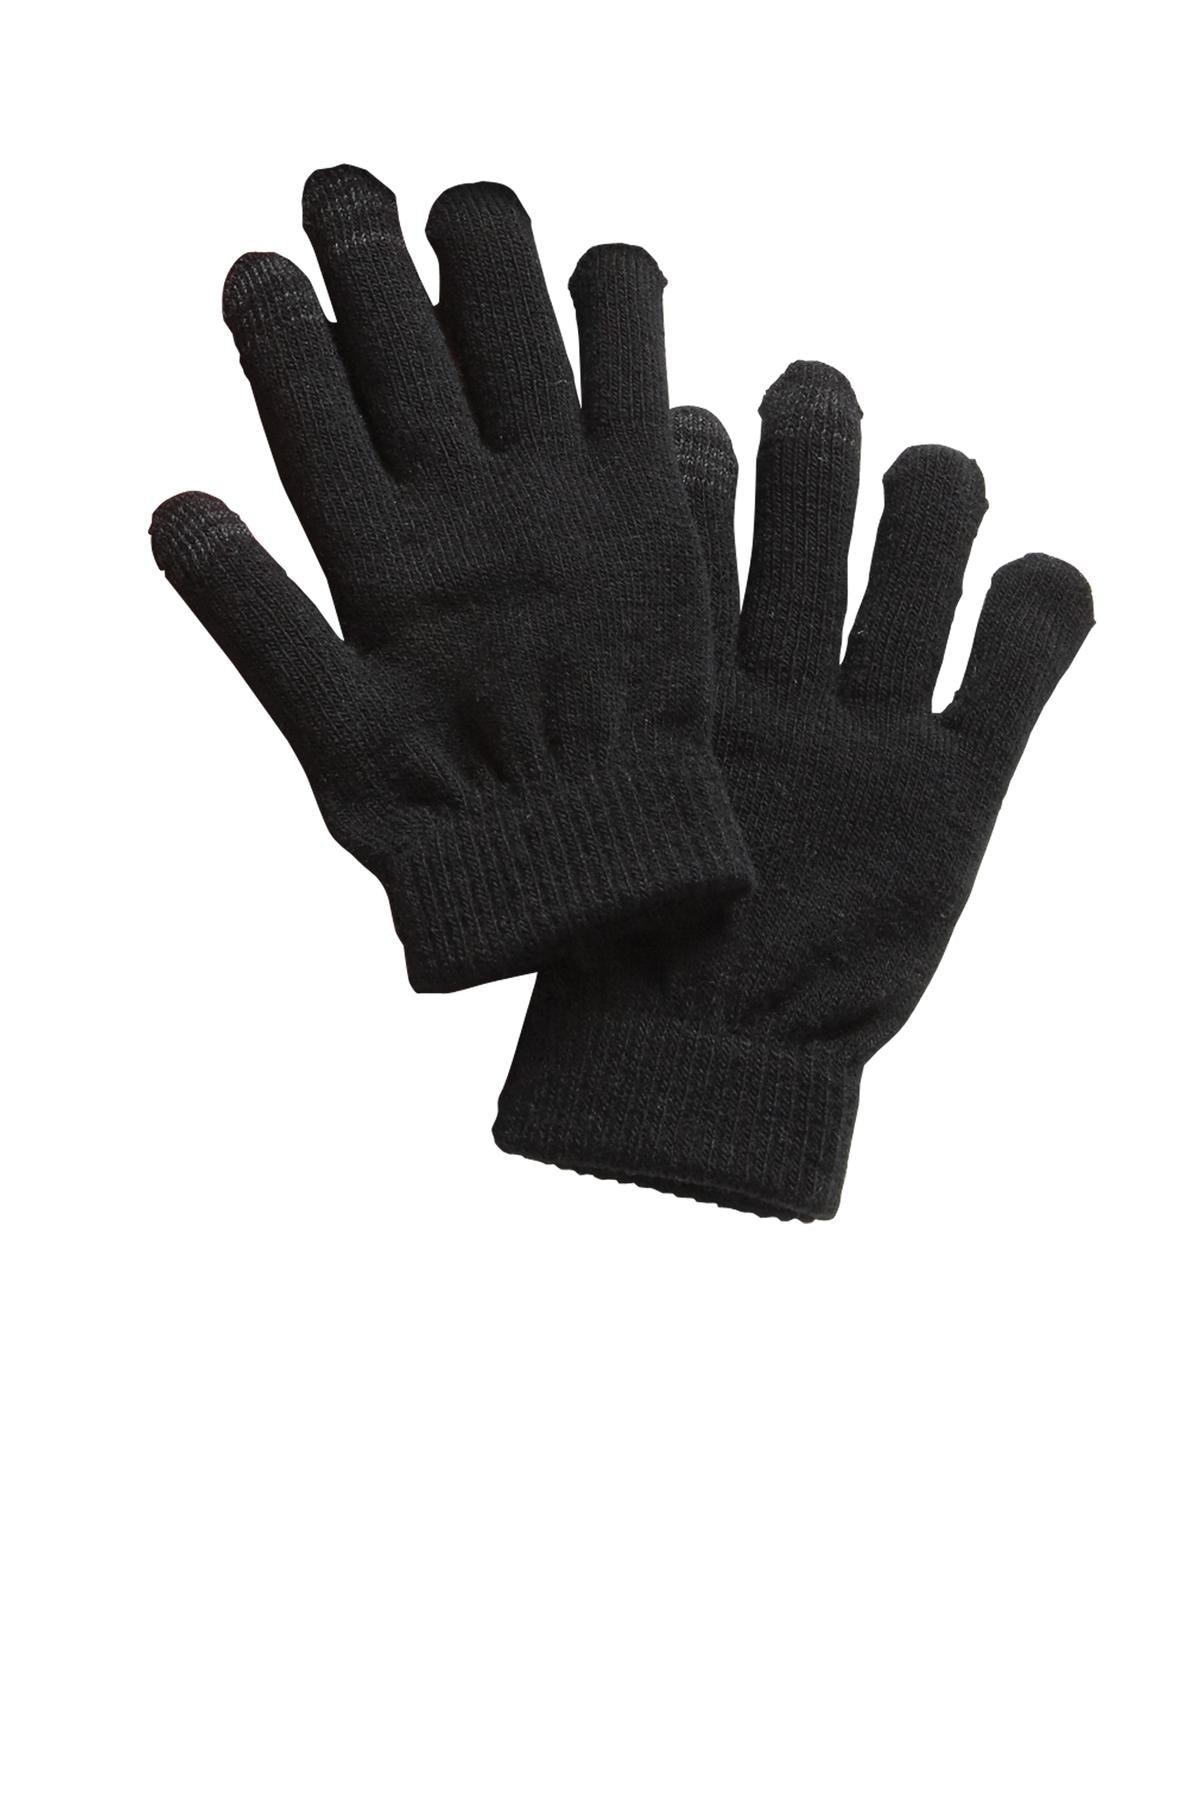 Sport-Tek Spectator Gloves. STA01 - Dresses Max